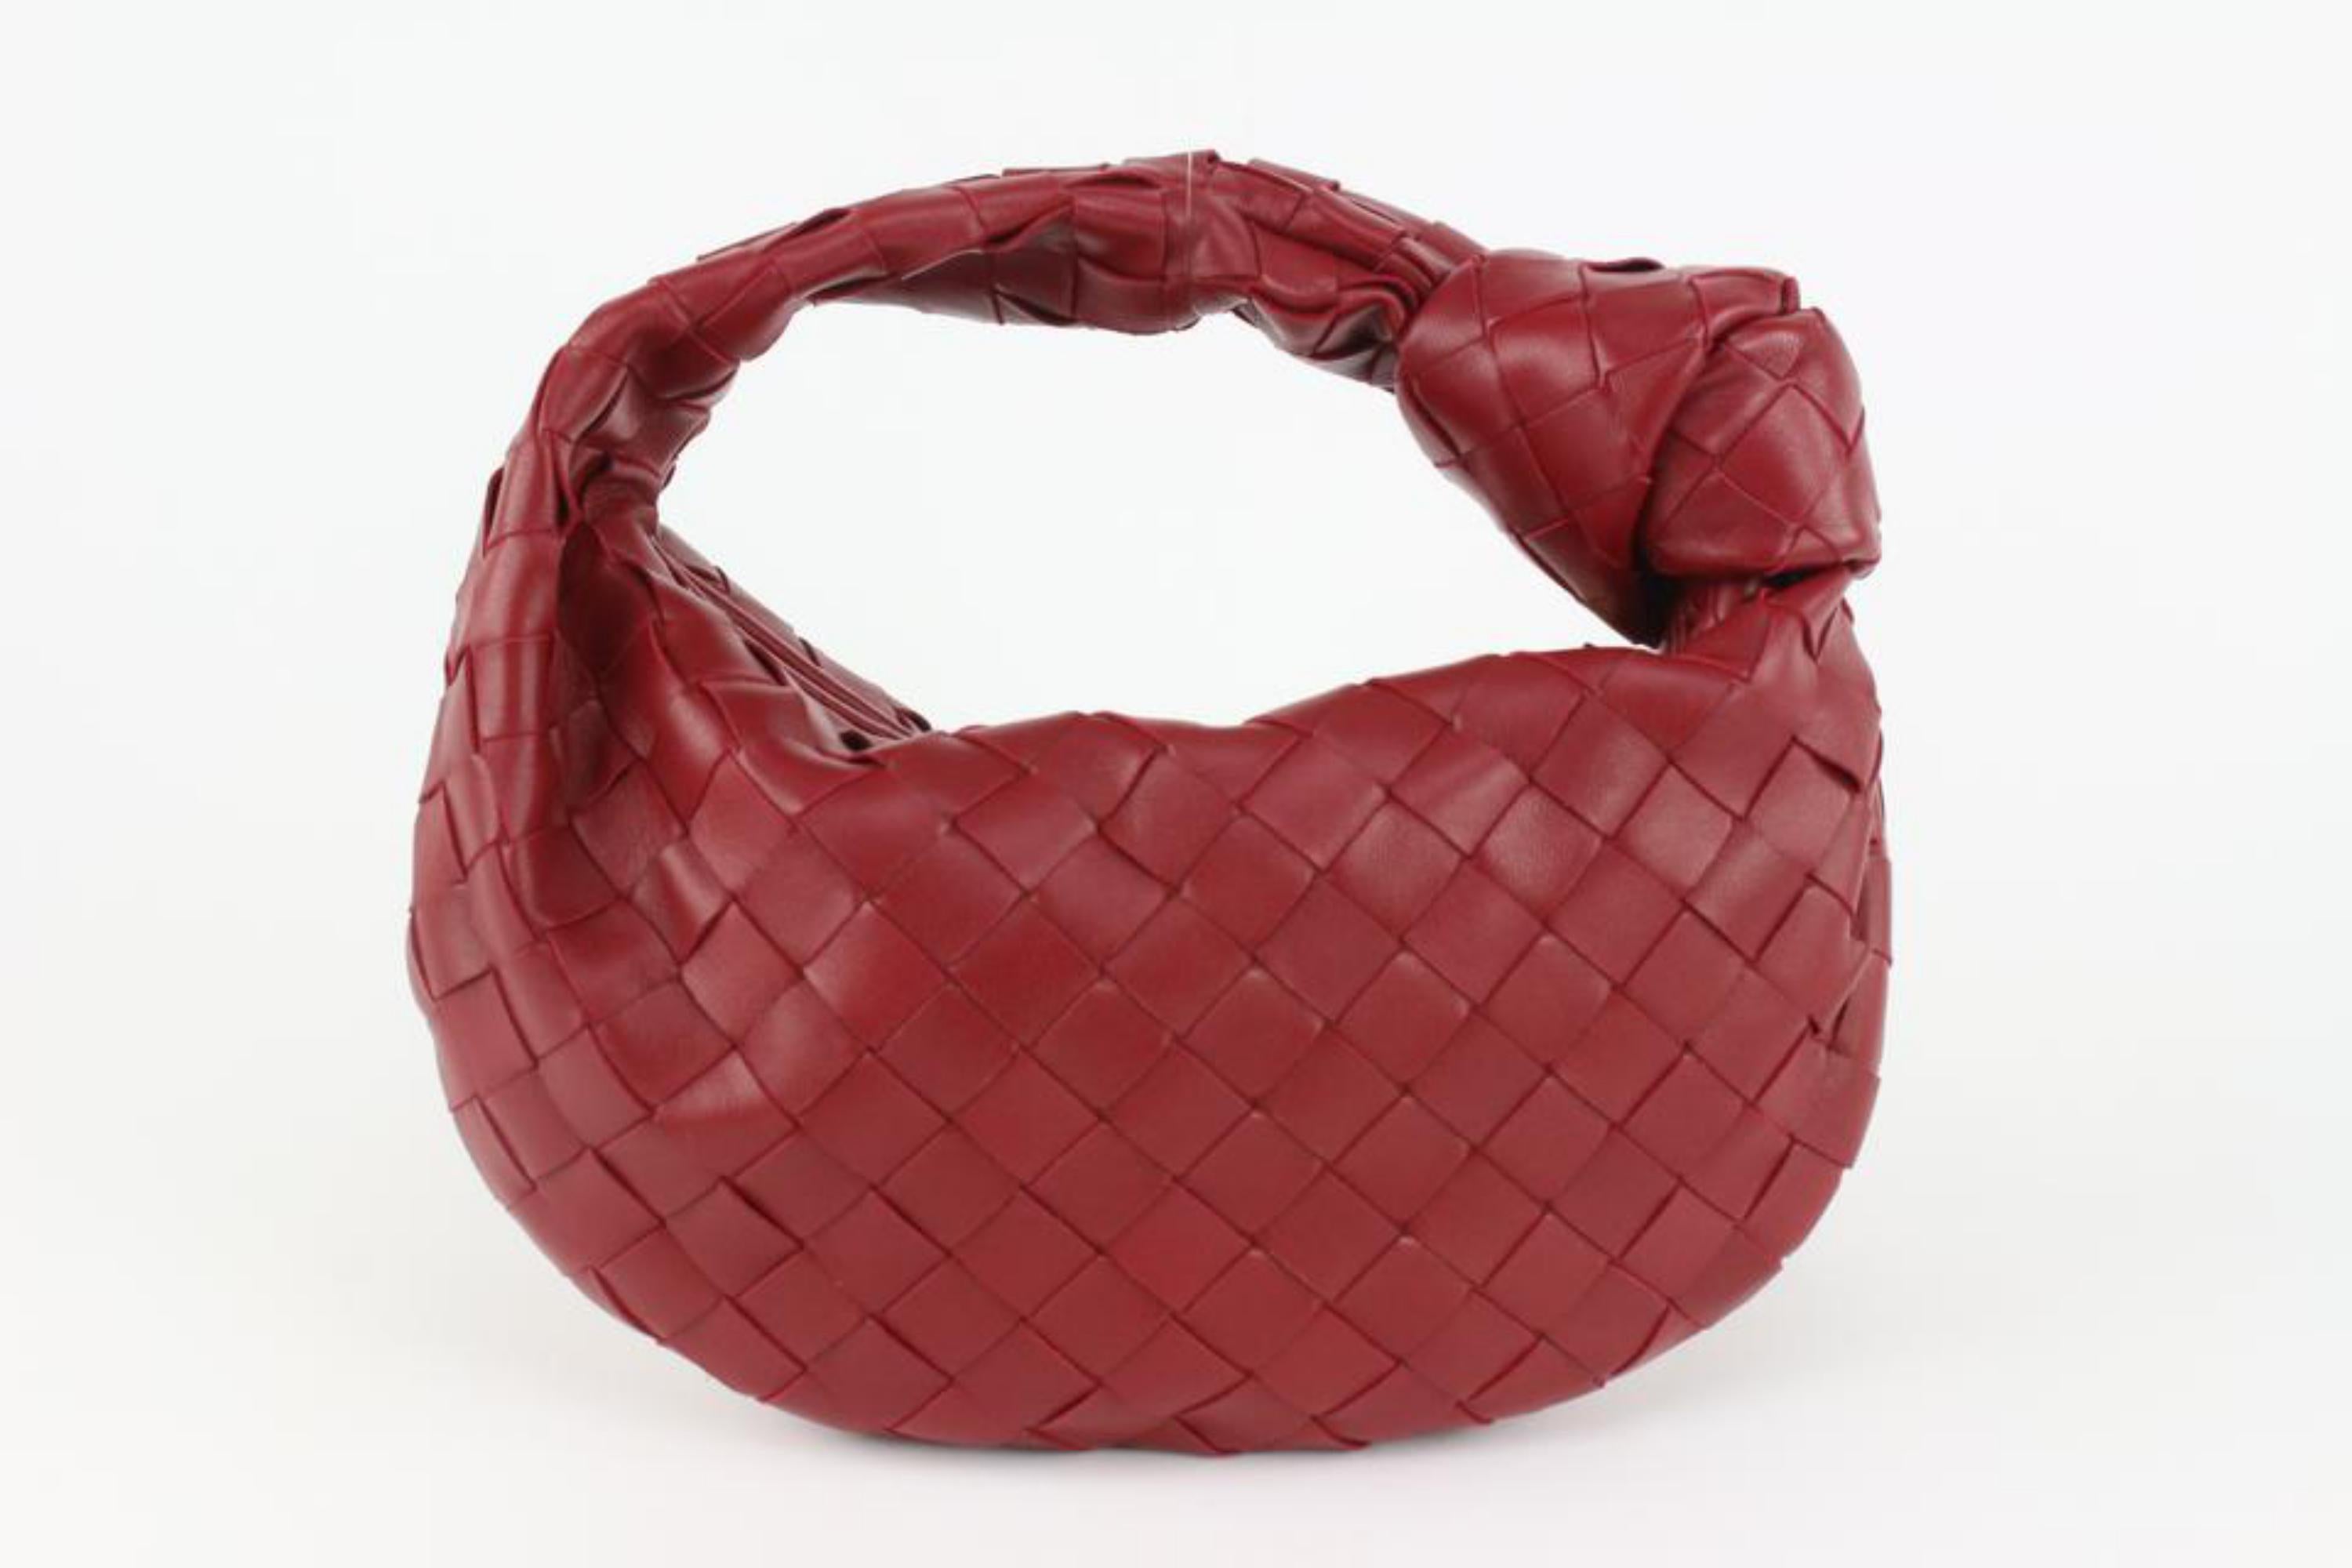 Brown Bottega Veneta Red Intrecciato Leather The Mini Jodie Hobo Bag 1123bv36